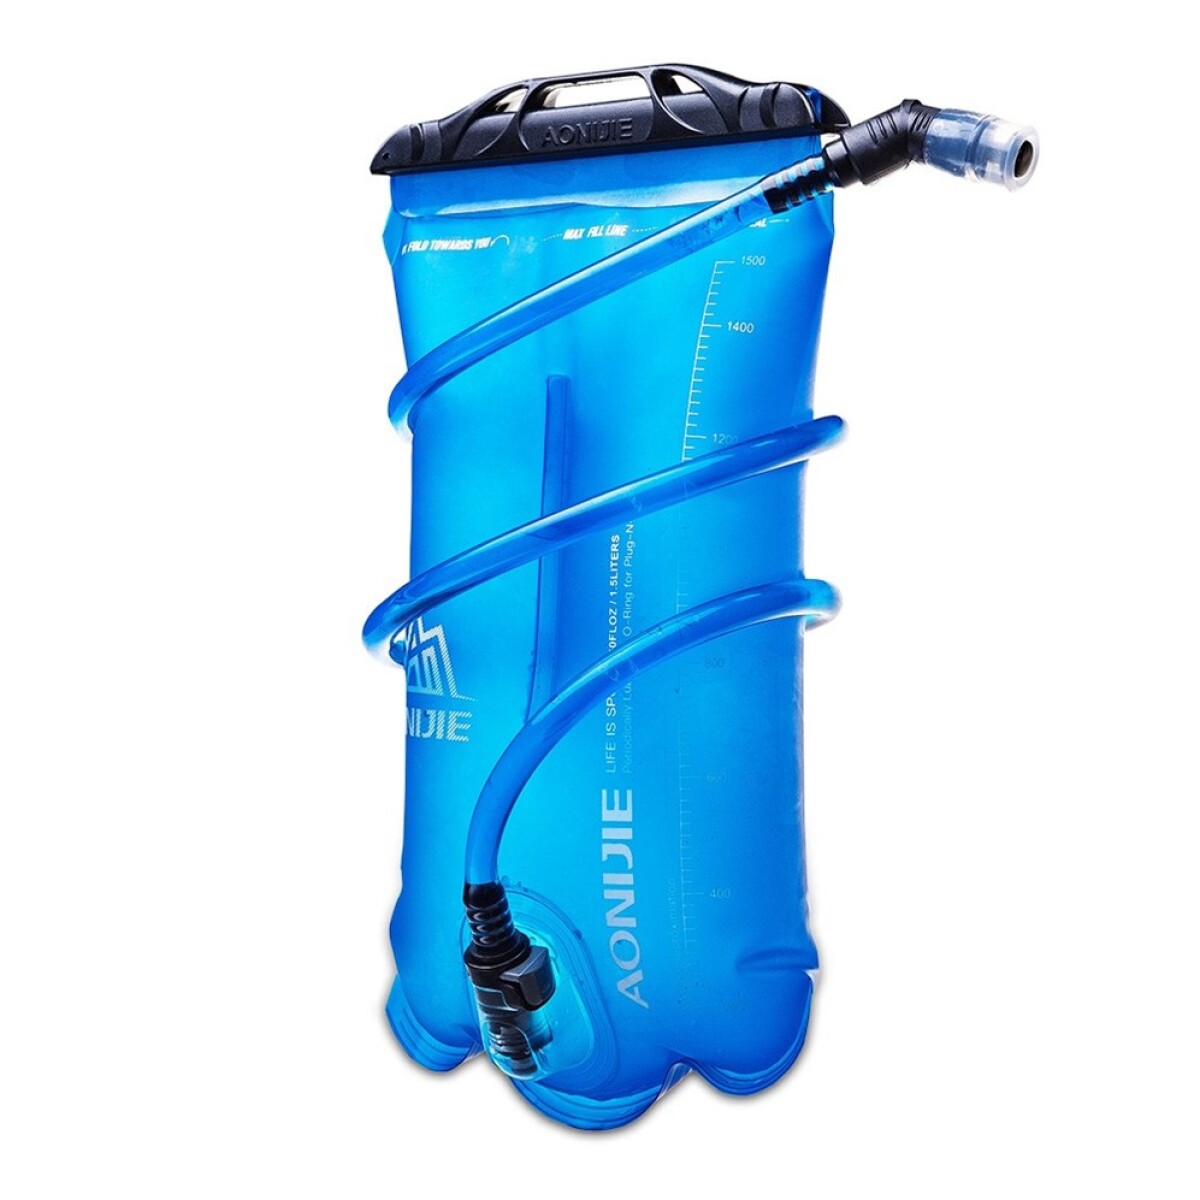 Bolsa De Agua Hidratacion Aonijie Water Bag - 2L 